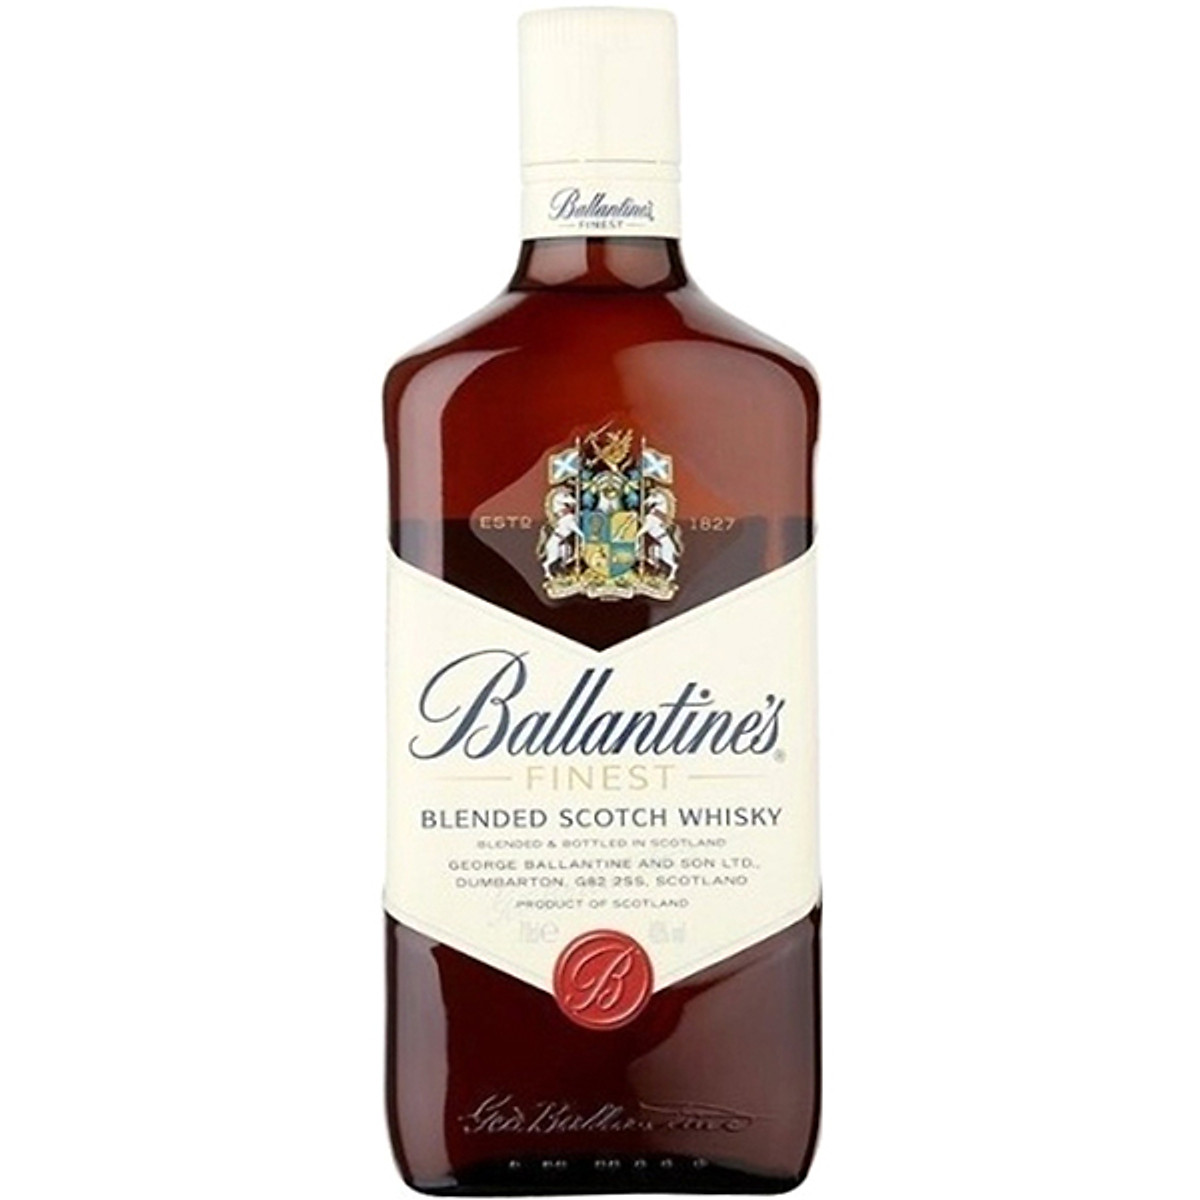 Rượu Whisky Ballantine's Finest